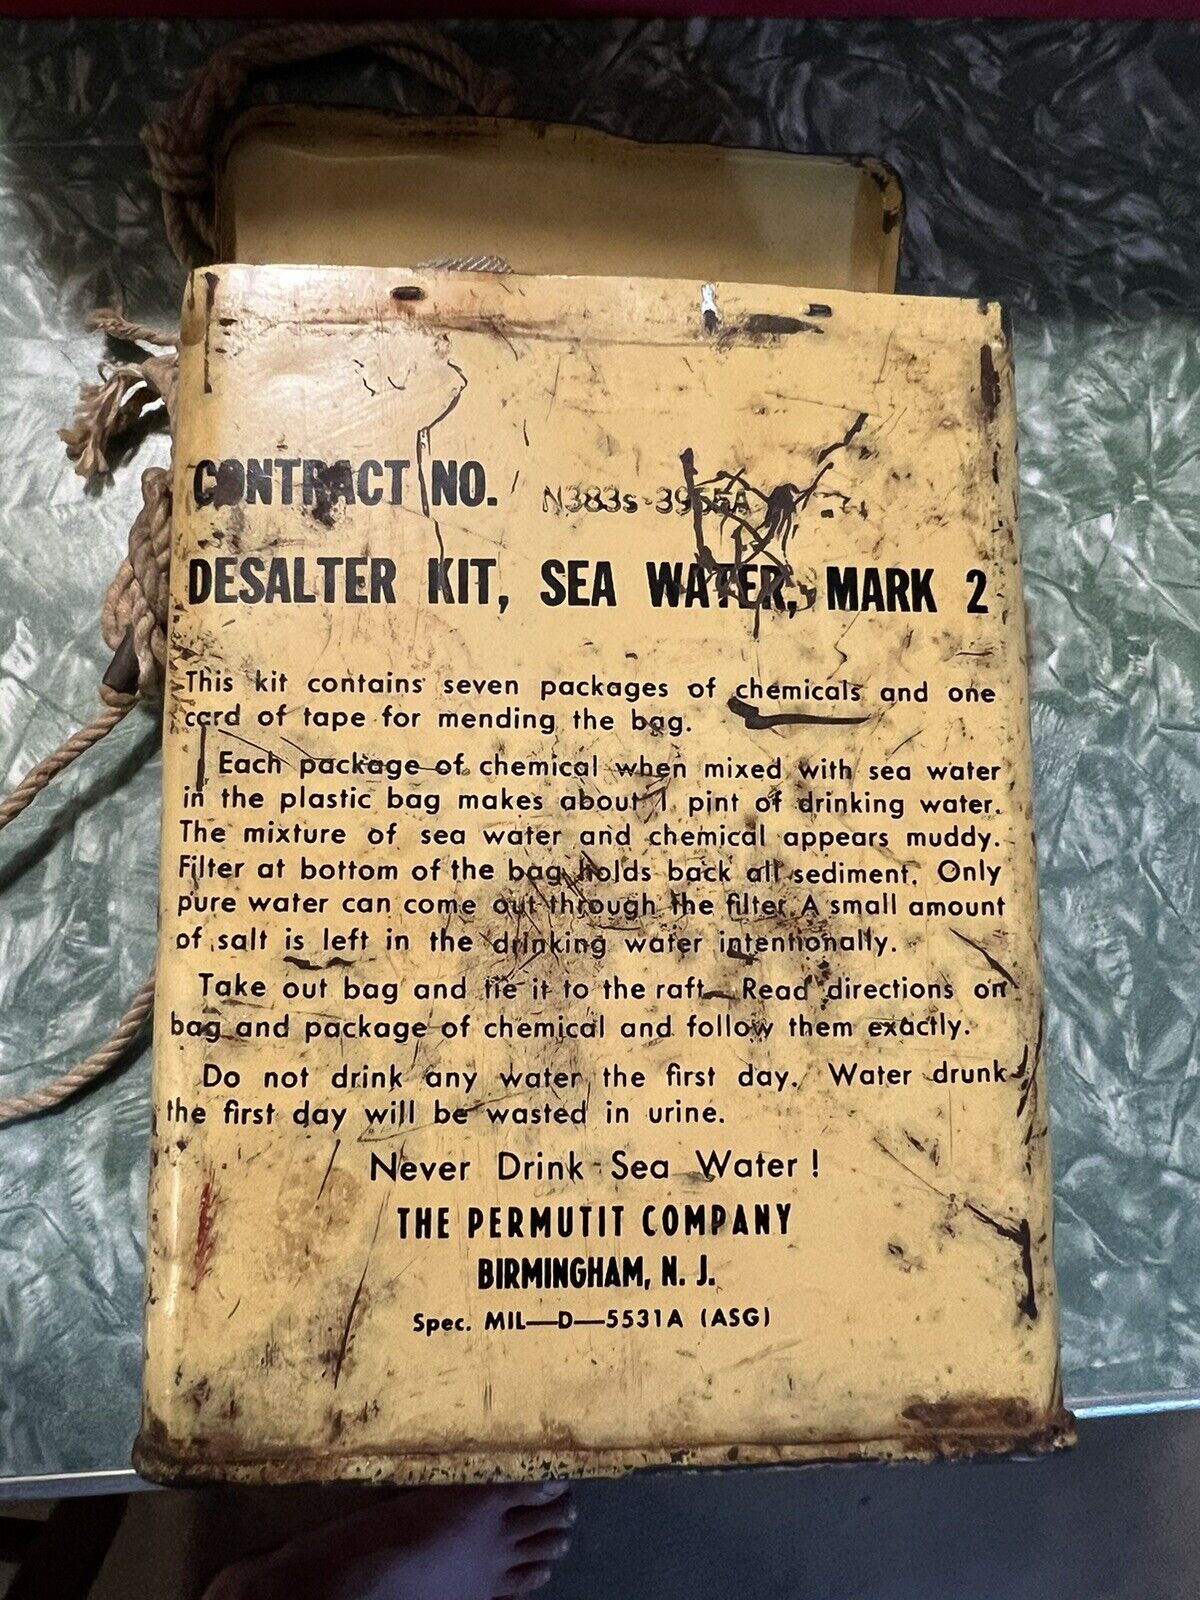 G.I. DESALTER  KIT  SEA  WATER  MARK 2  1955